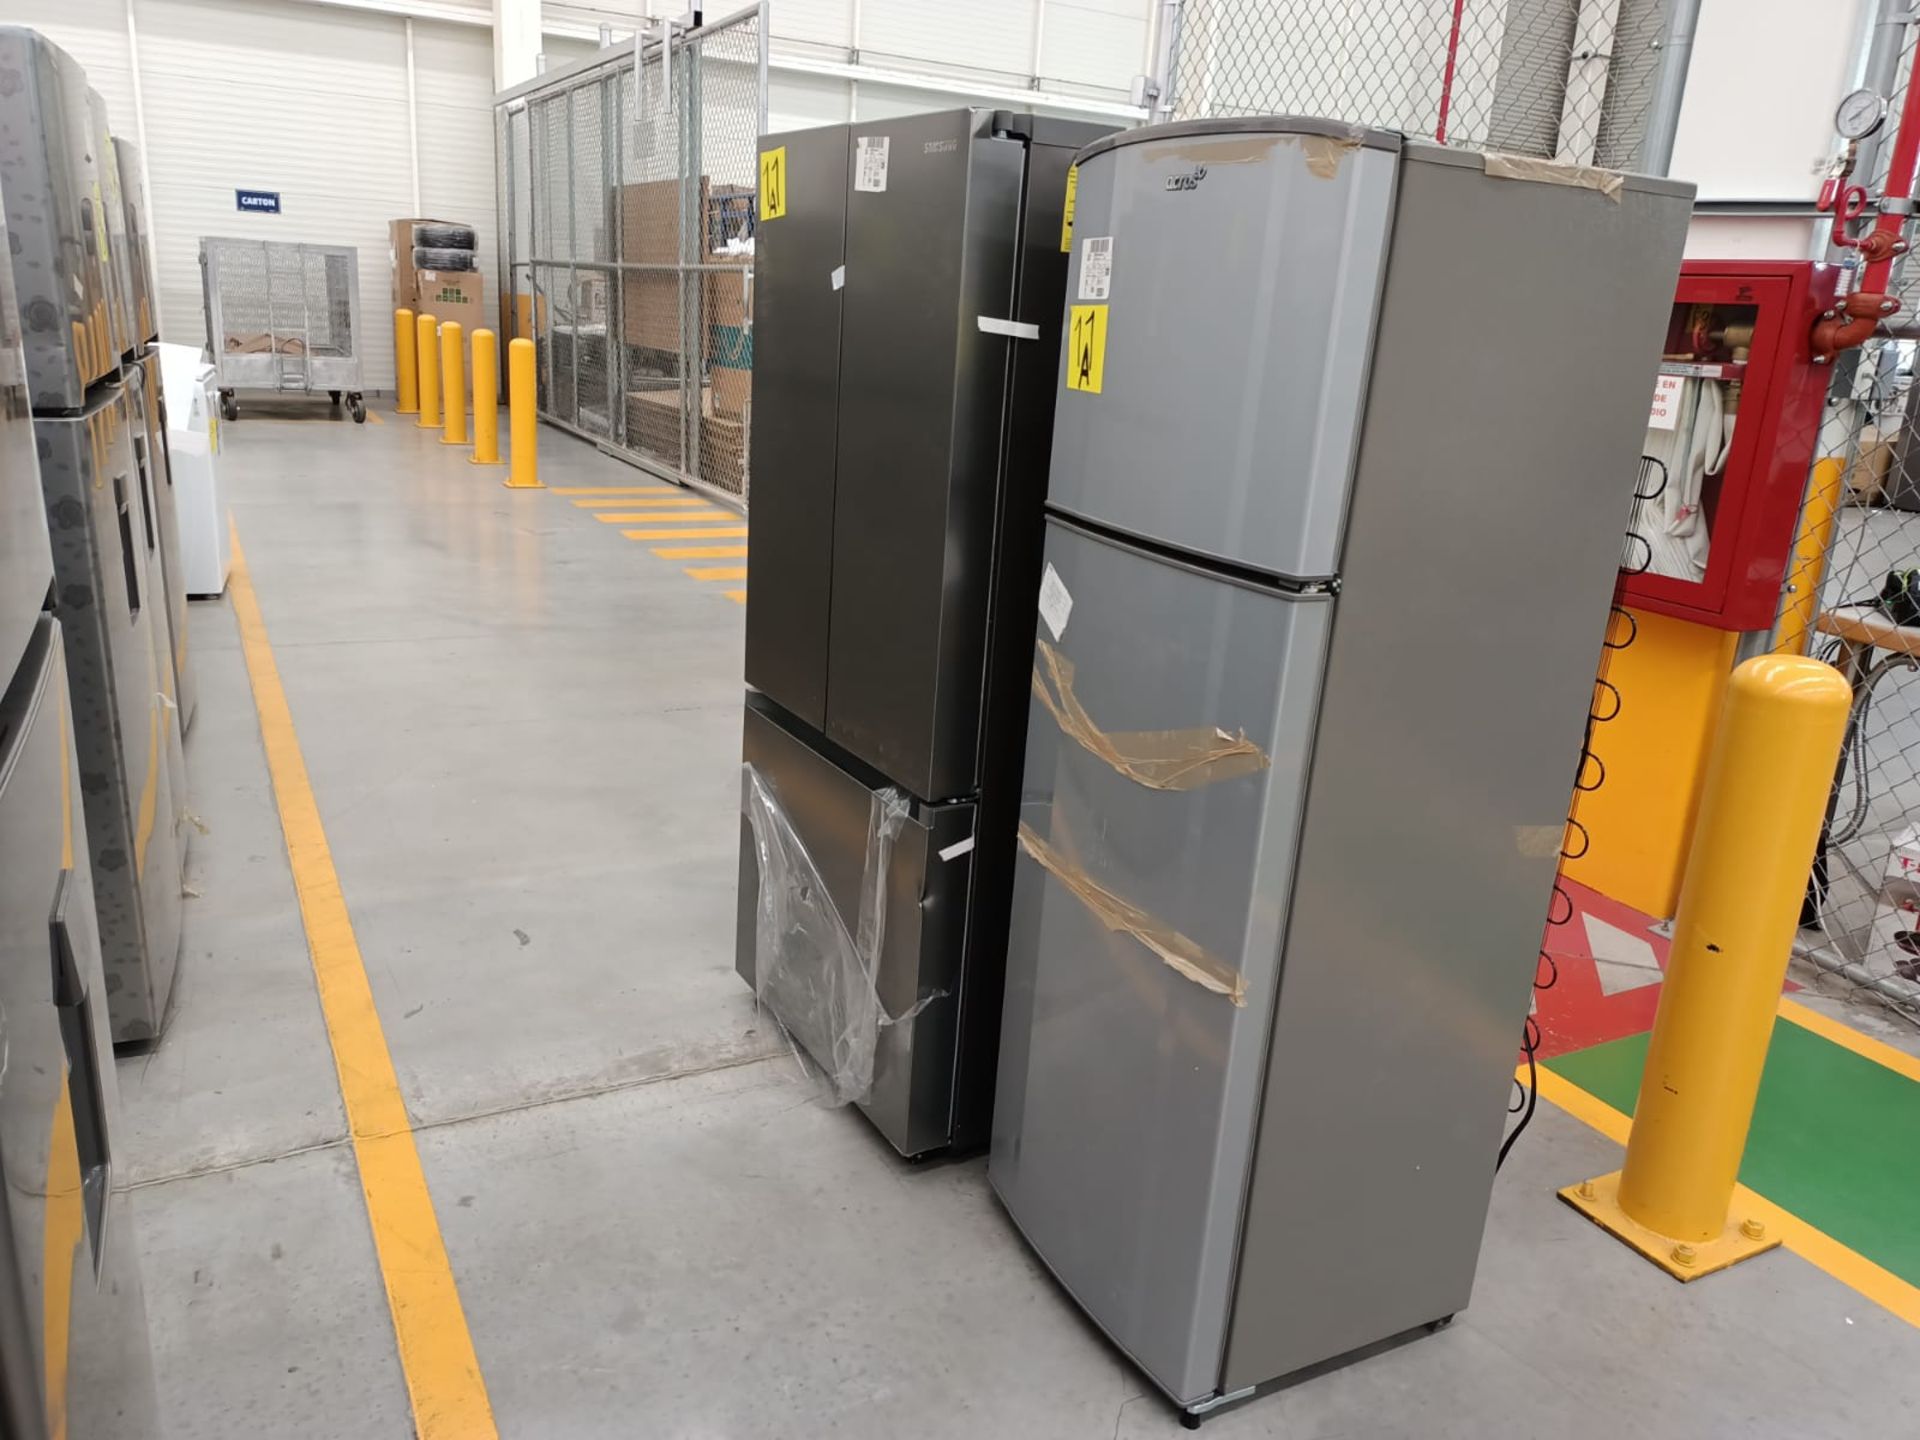 Lote de 2 refrigeradores incluye: 1 refrigerador marca Samsung, modelo RF22A4010S9/EM - Image 11 of 51